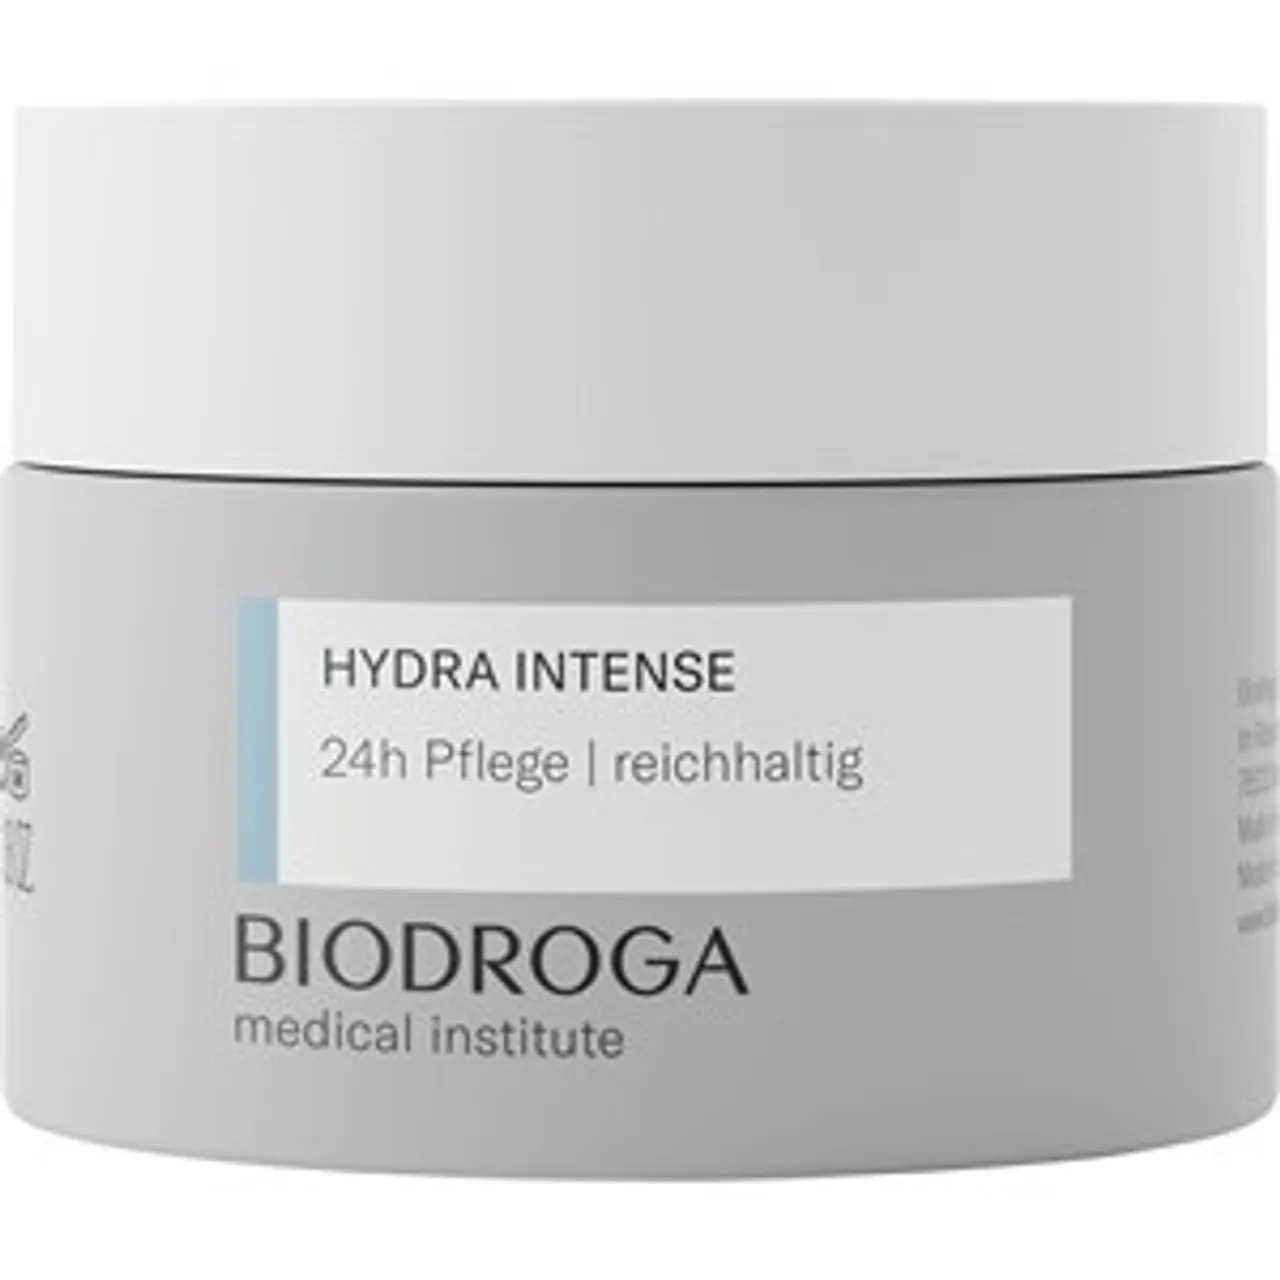 Hydra vergleichen Damen Pflege Biodroga MD Gesichtscreme 24h - Preise Intense